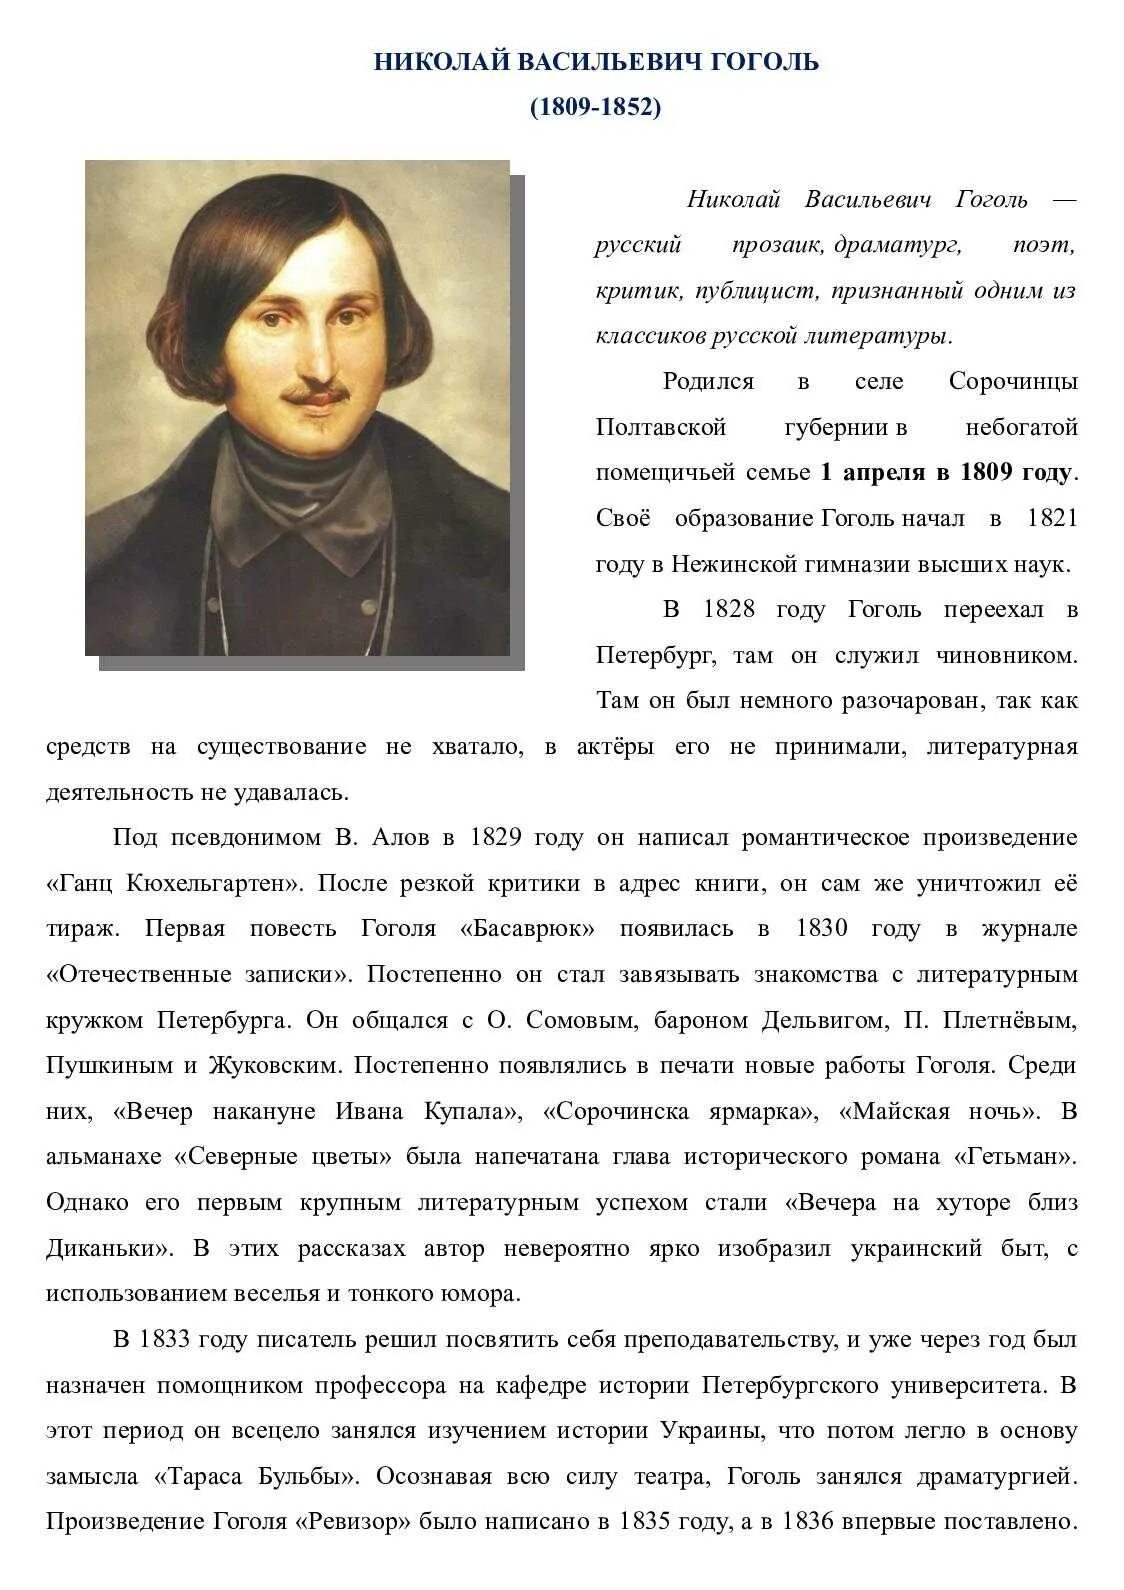 Биография Гоголя. Краткая биография Гоголя. Н в гоголь судьба